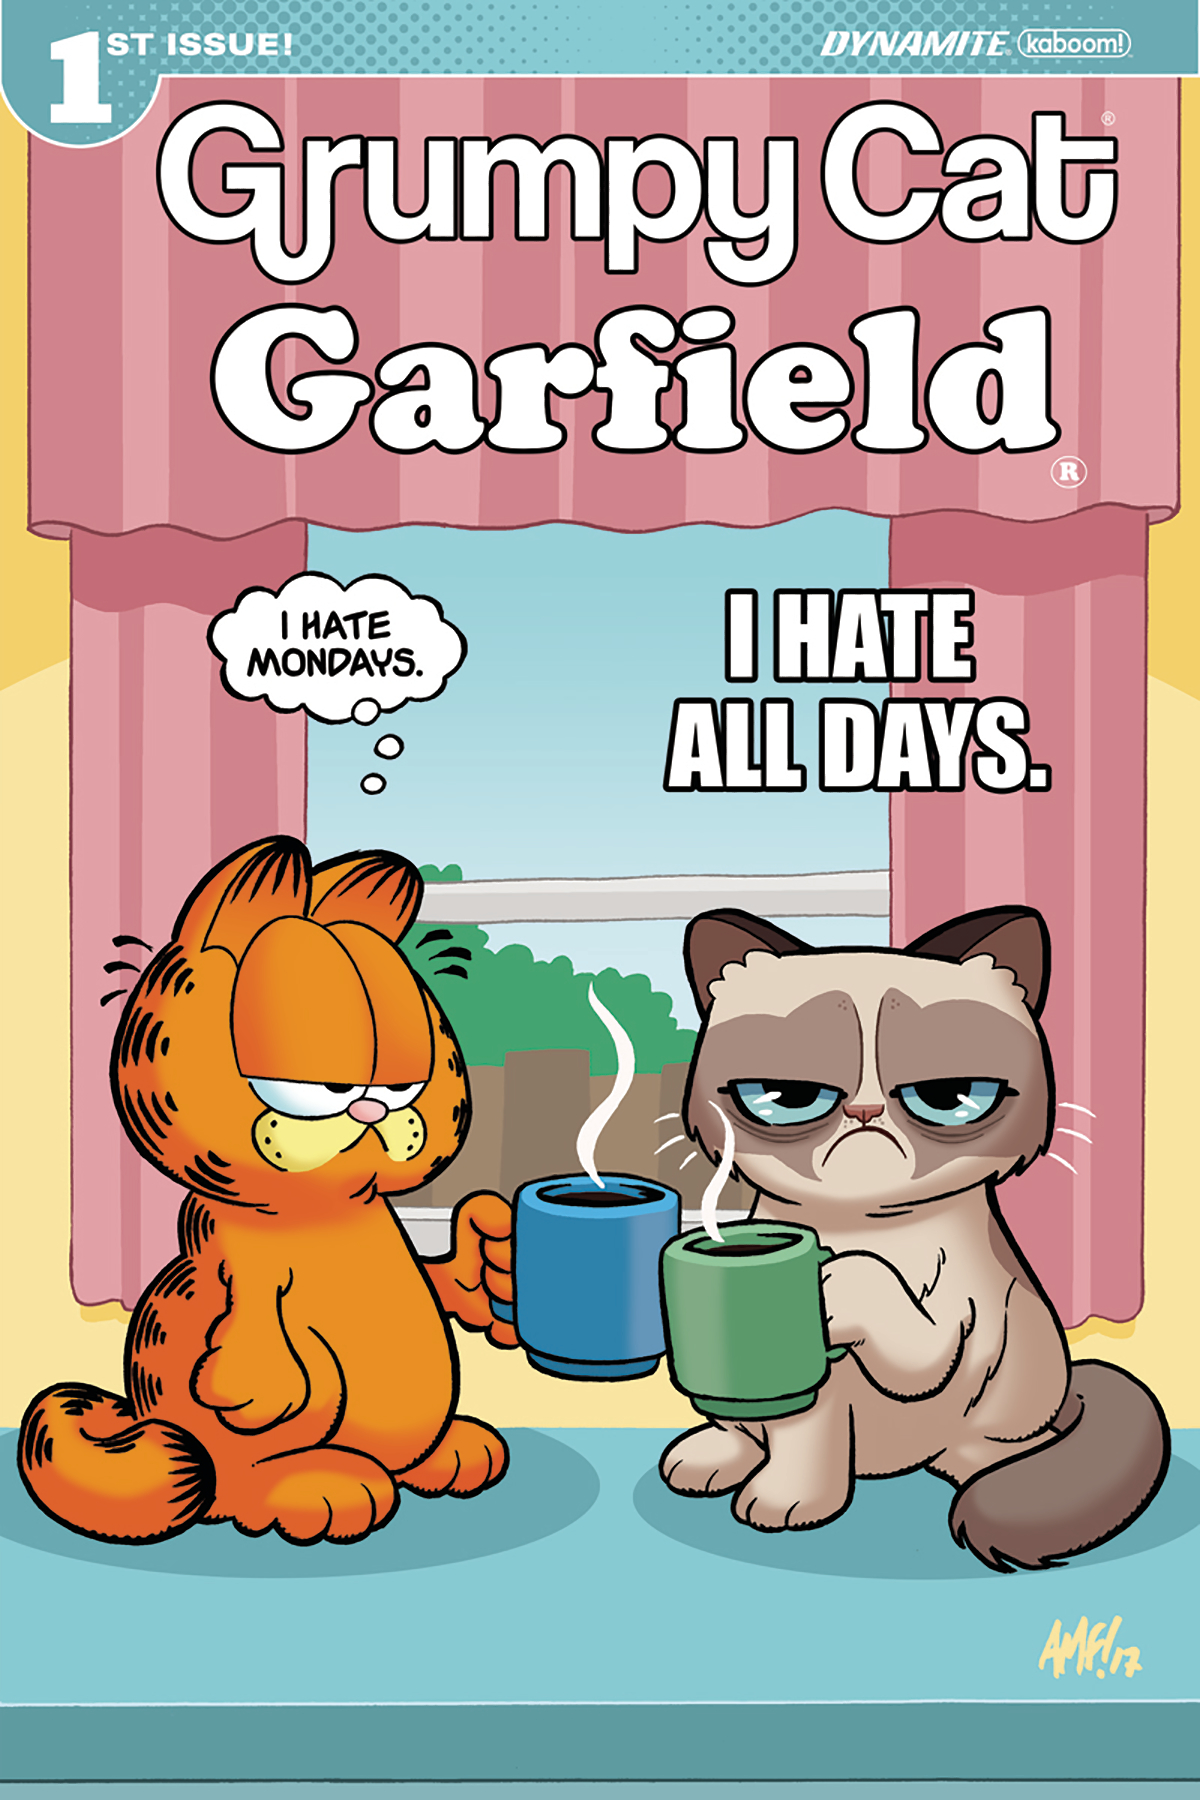 Grumpy Cat Meets Garfield In New Crossover Mini Series First Comics News 